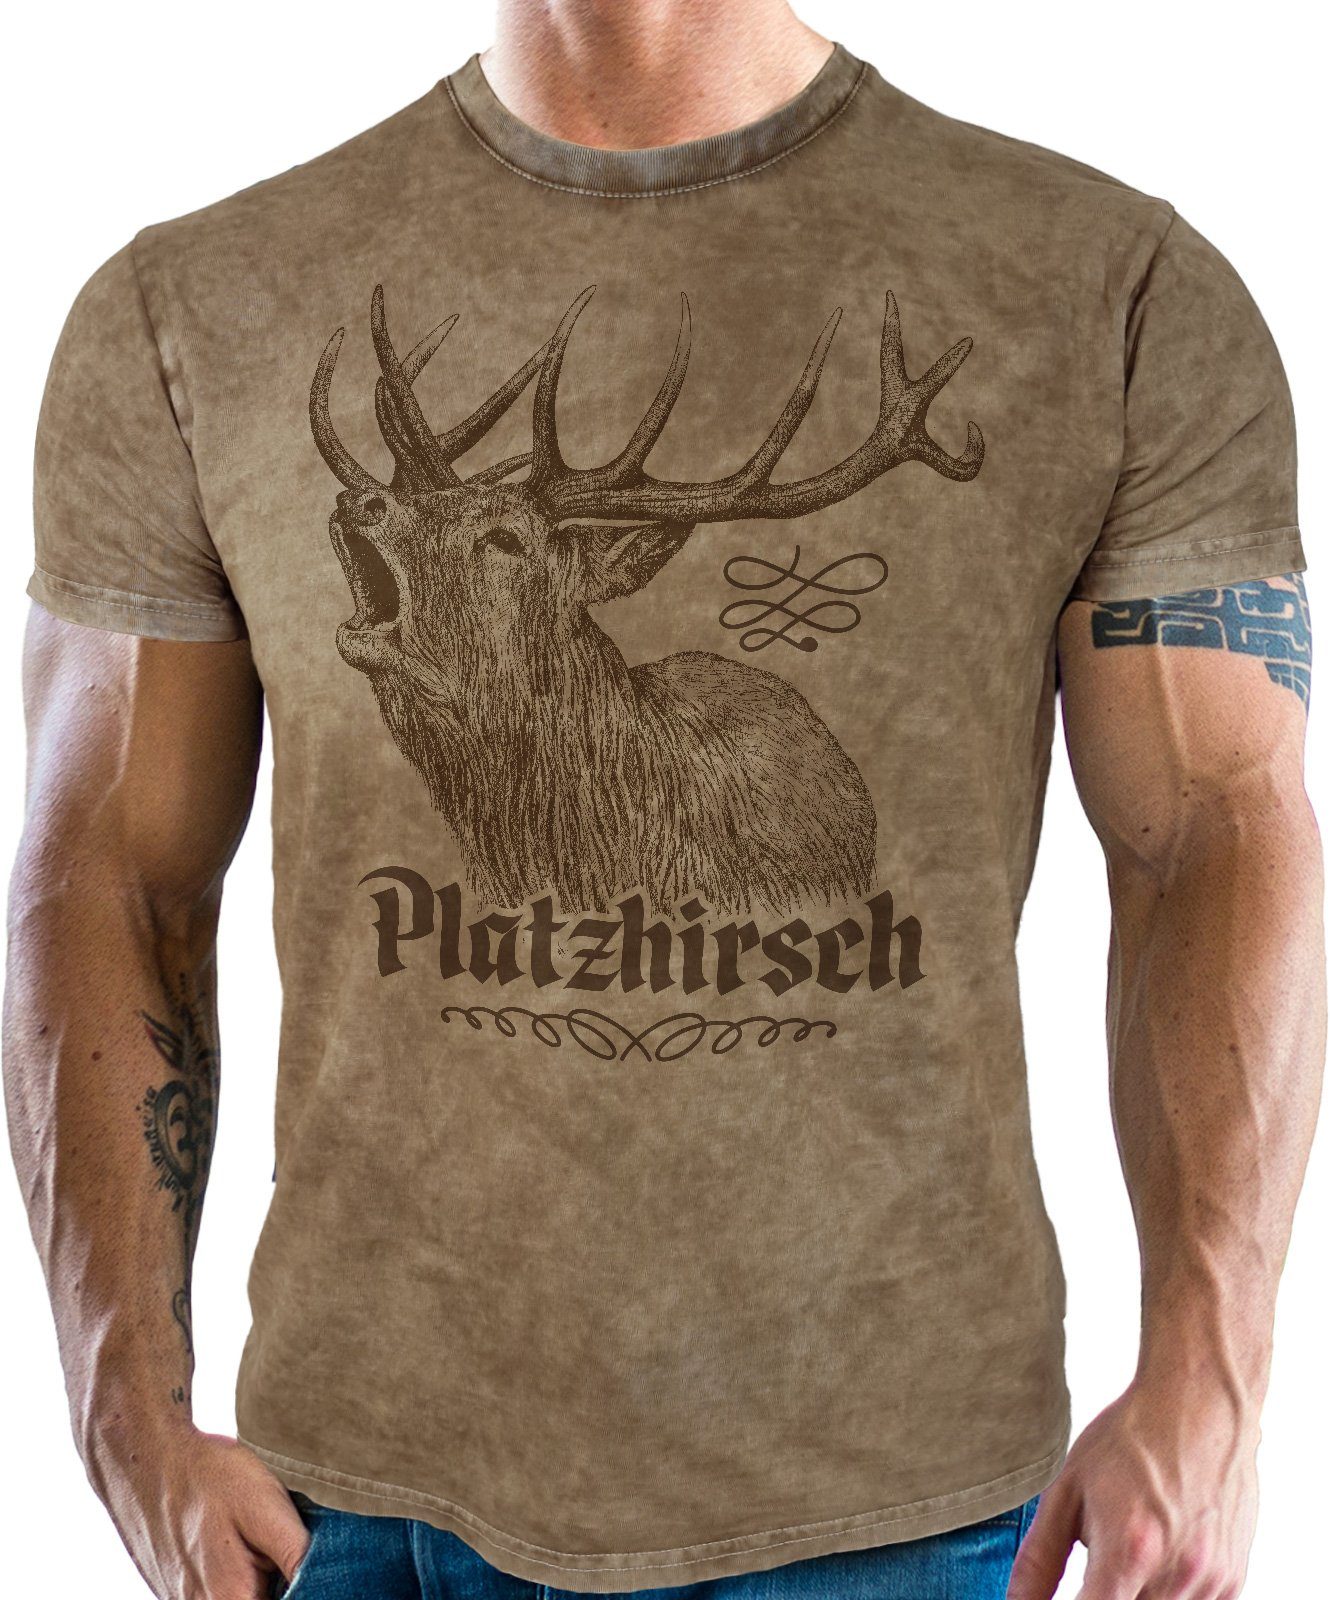 LOBO NEGRO® Trachtenshirt für echte Look: vintage Platzhirsch Bayern im retro washed Fans used